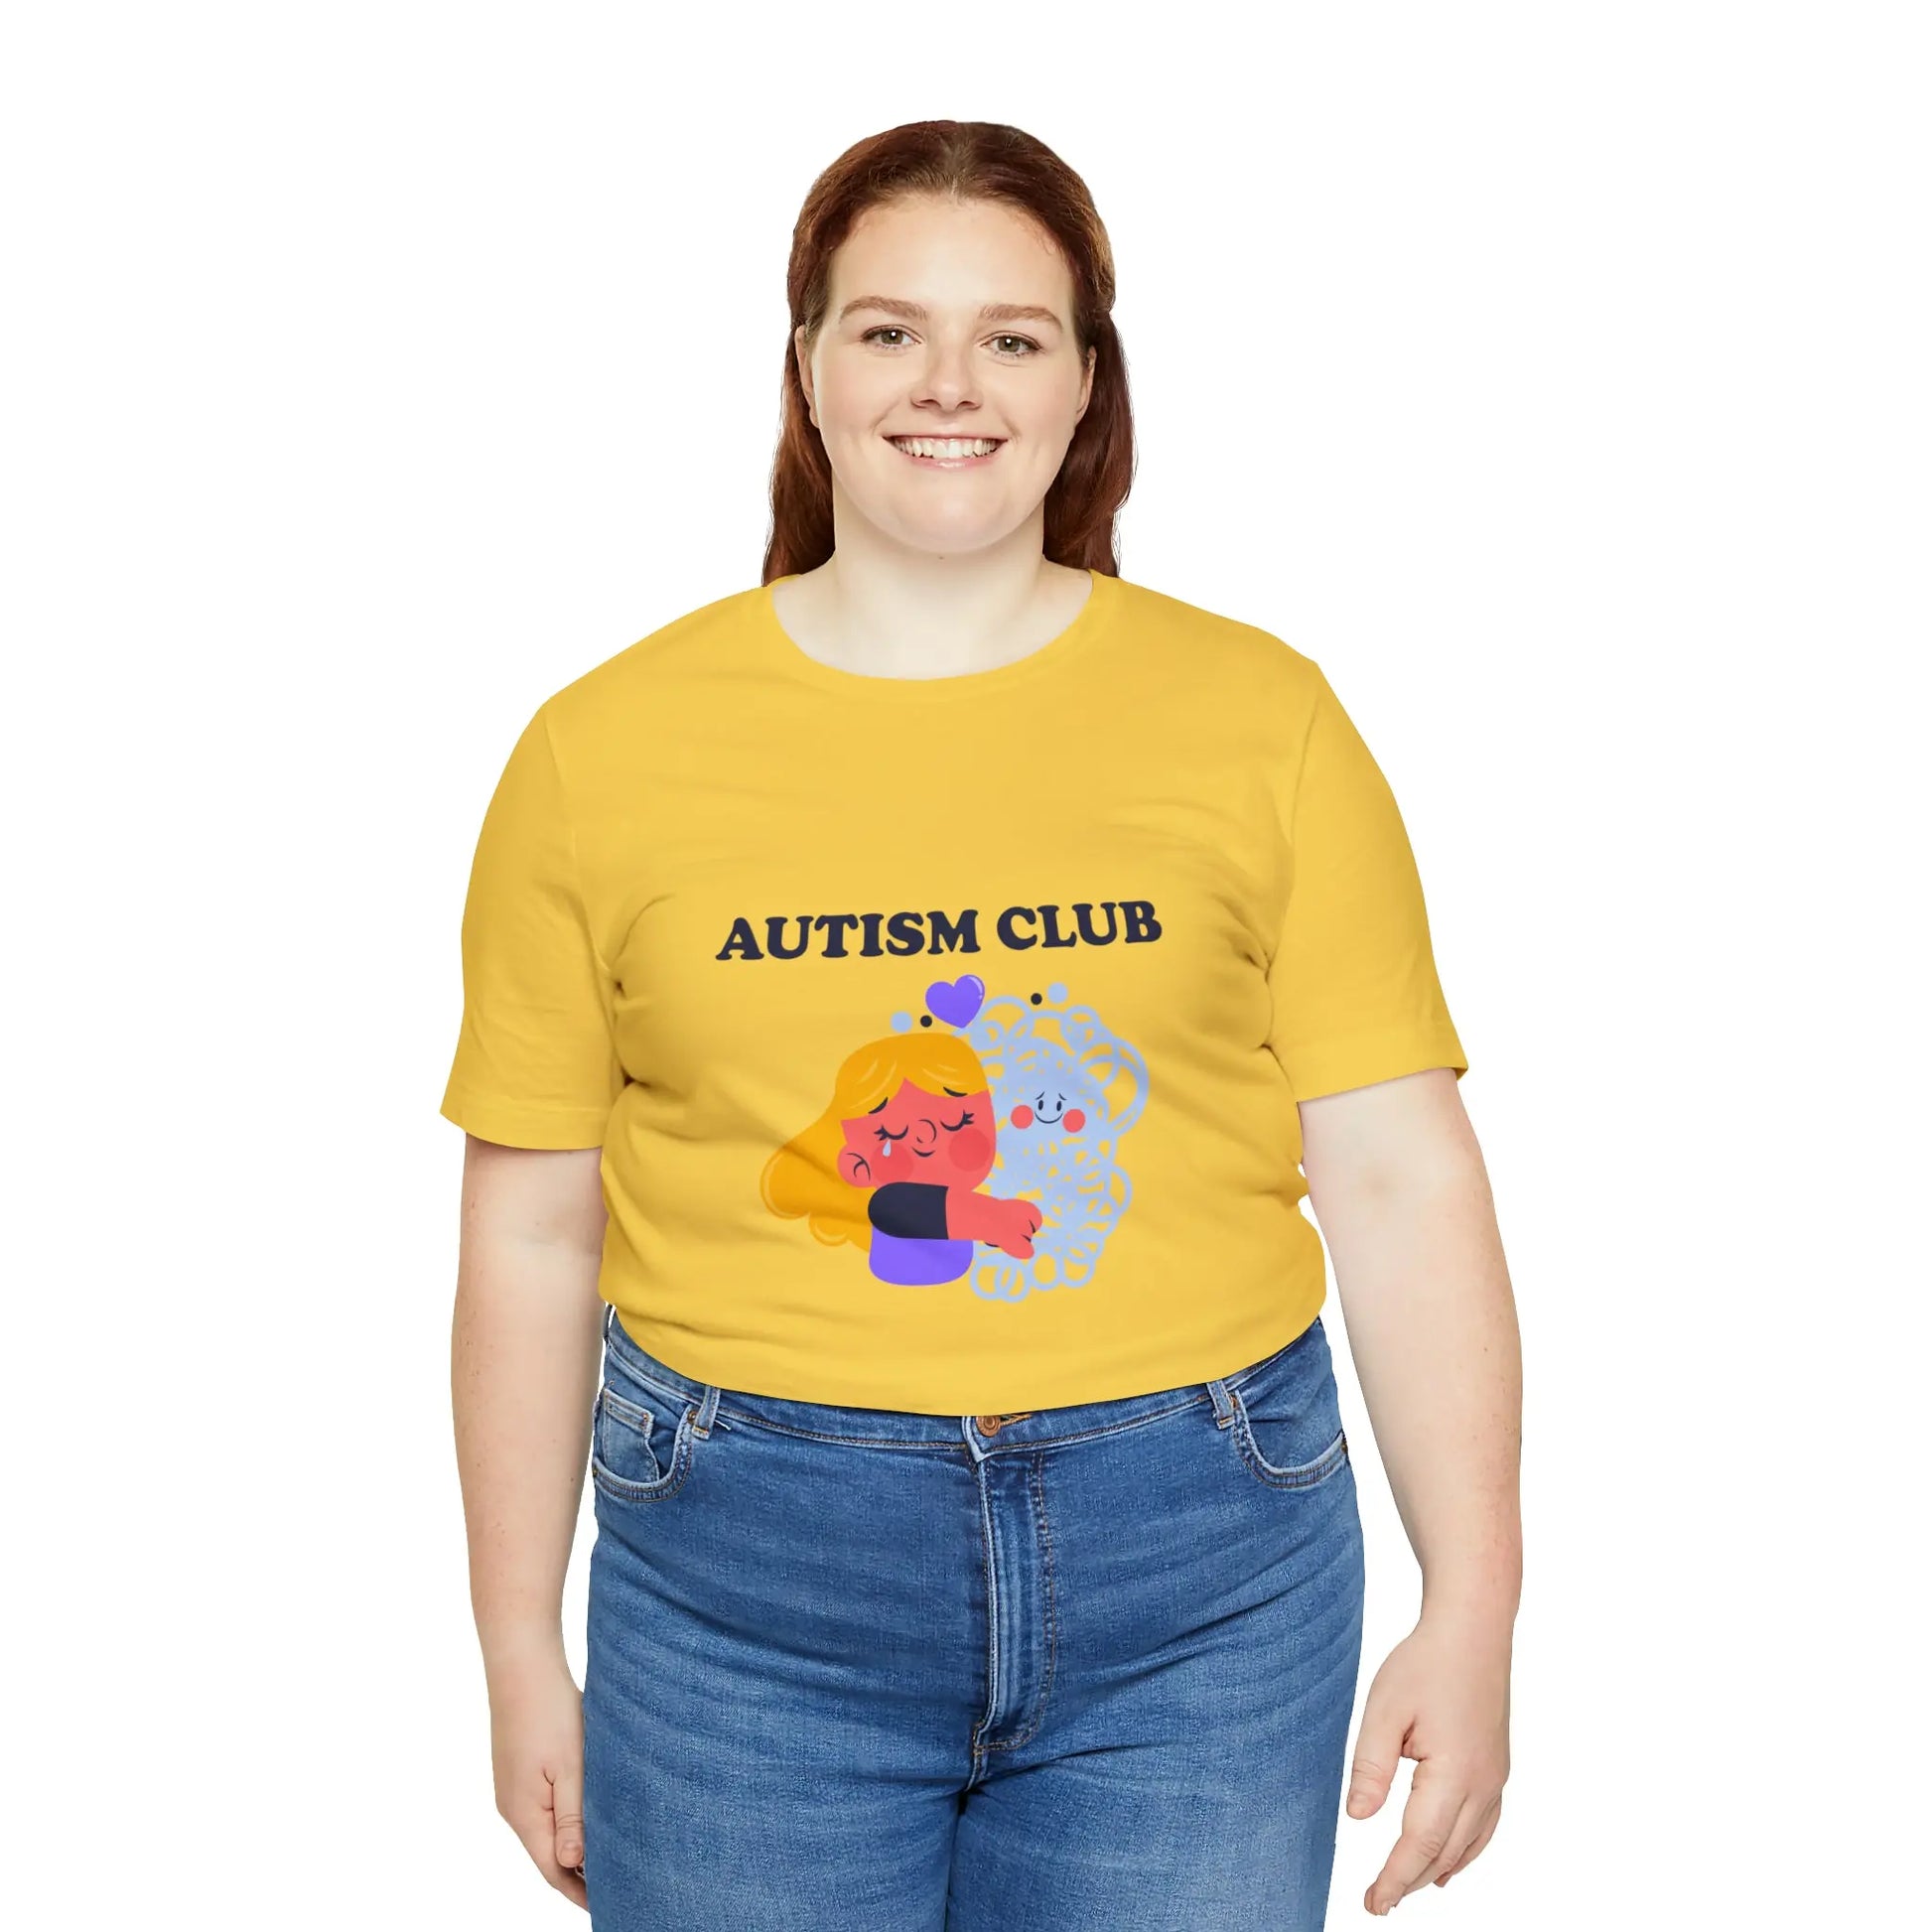 Autism Club T-Shirt